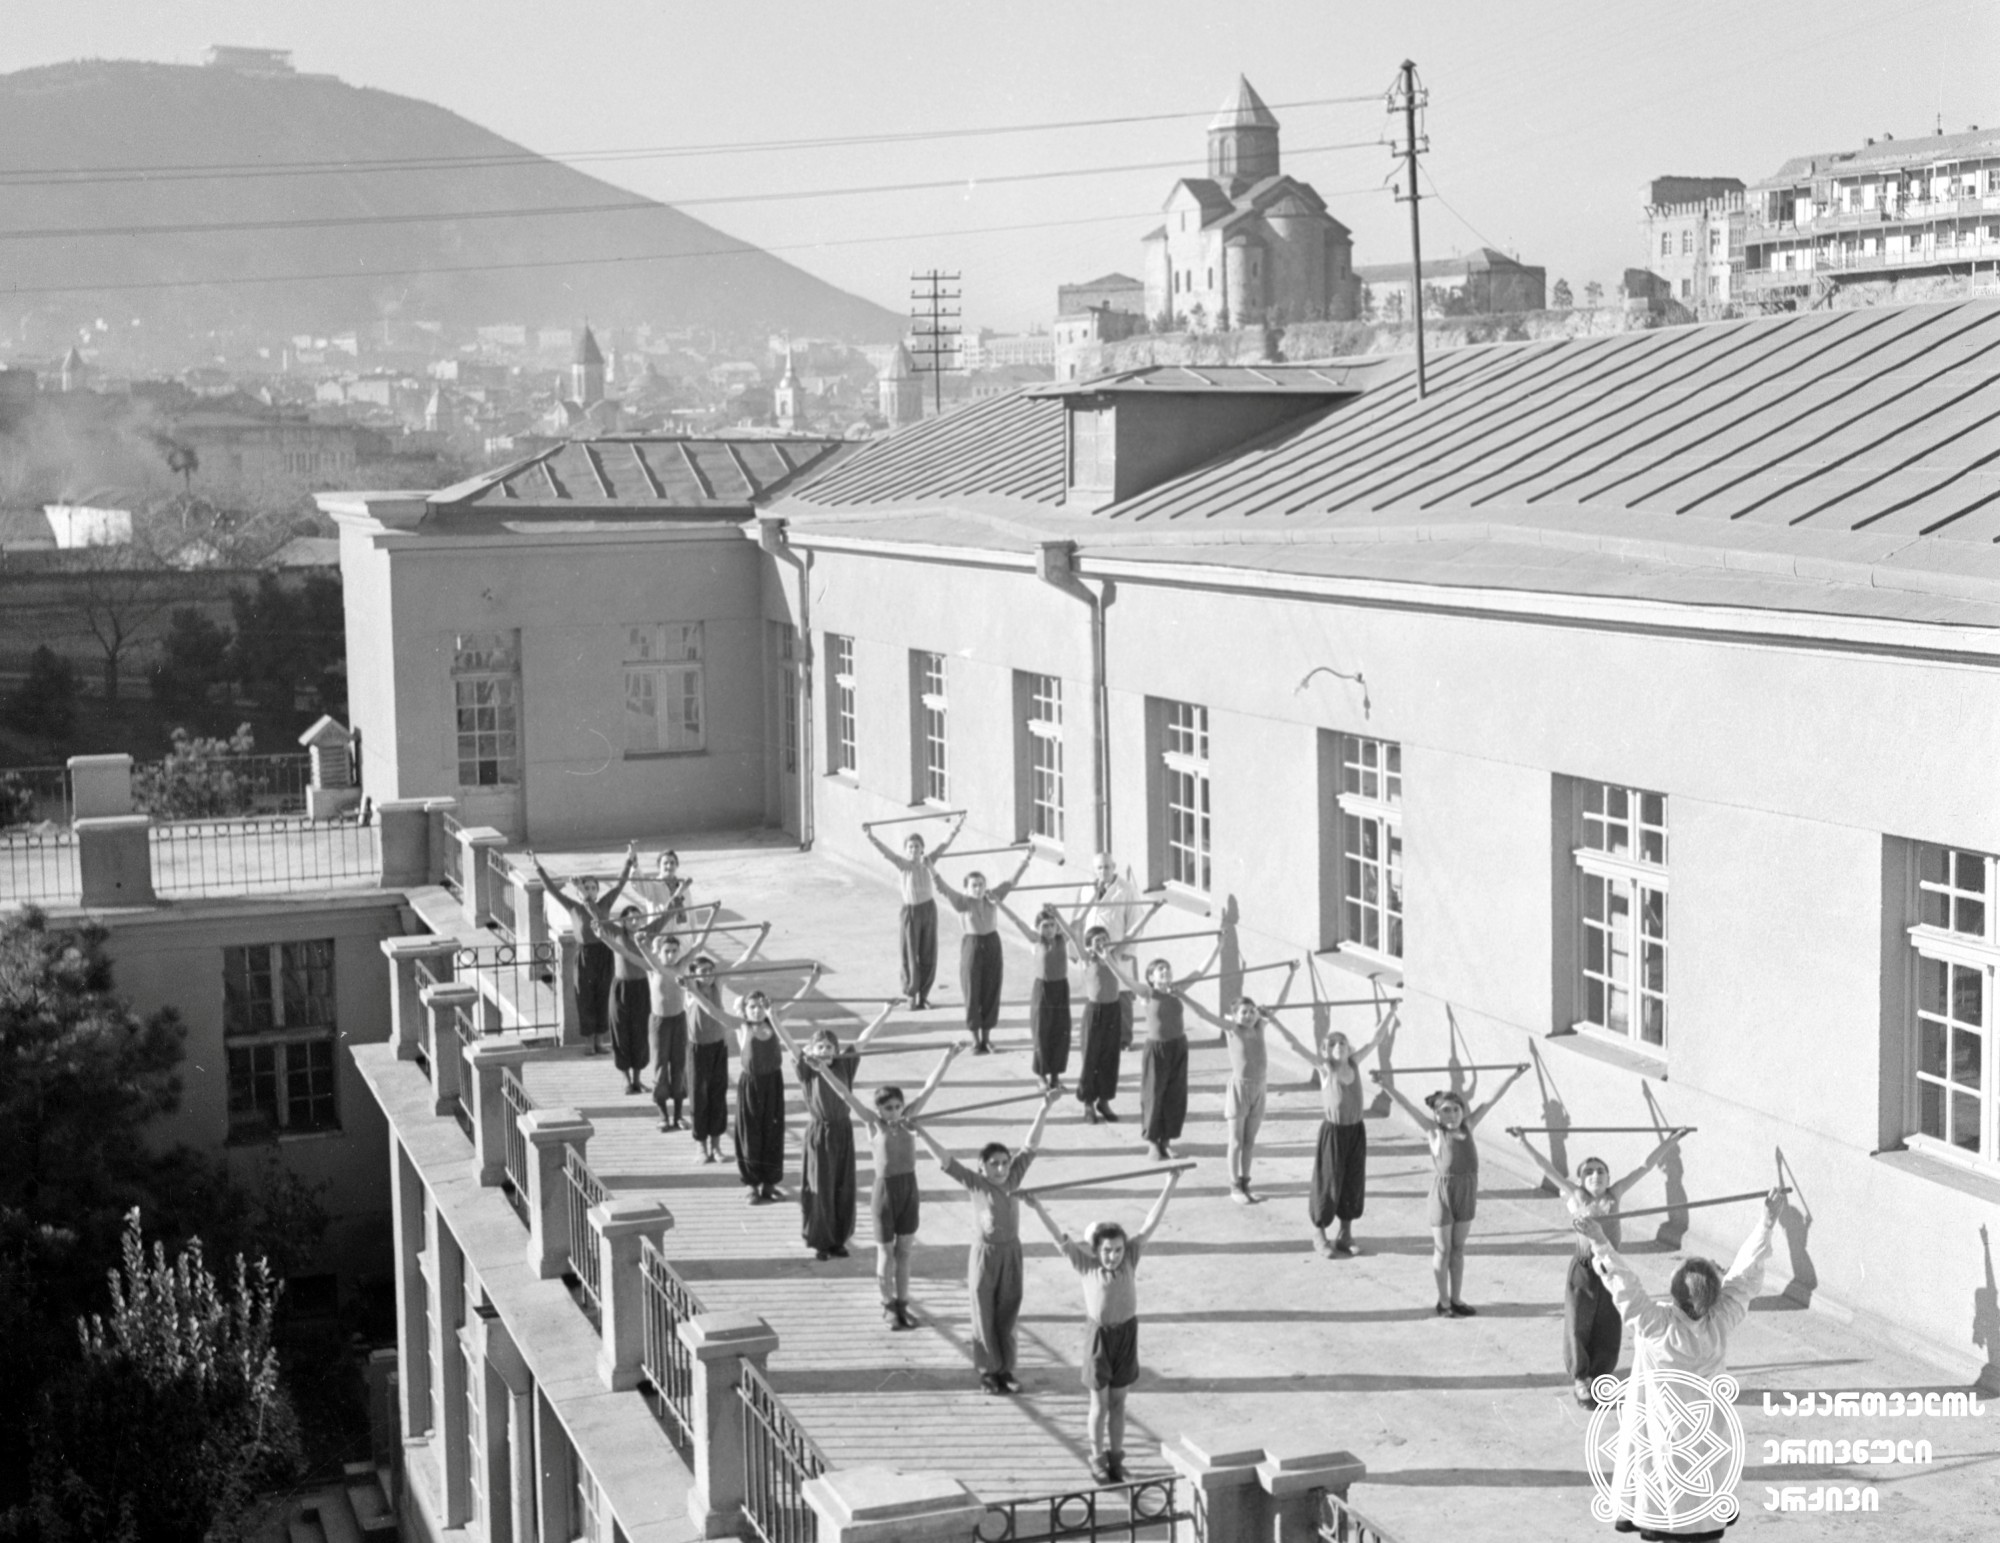 თბილისის ბალნეოლოგიური კურორტი. პაციენტები ვარჯიშის დროს. თბილისი. <br> ფოტო: ლ. დორენსკი. <br>1950-იანი წლები. <br>
Tbilisi Balneological resort. Patients doing  exercises. Tbilisi.<br> Photo by L. Dorenski. <br>1950s.